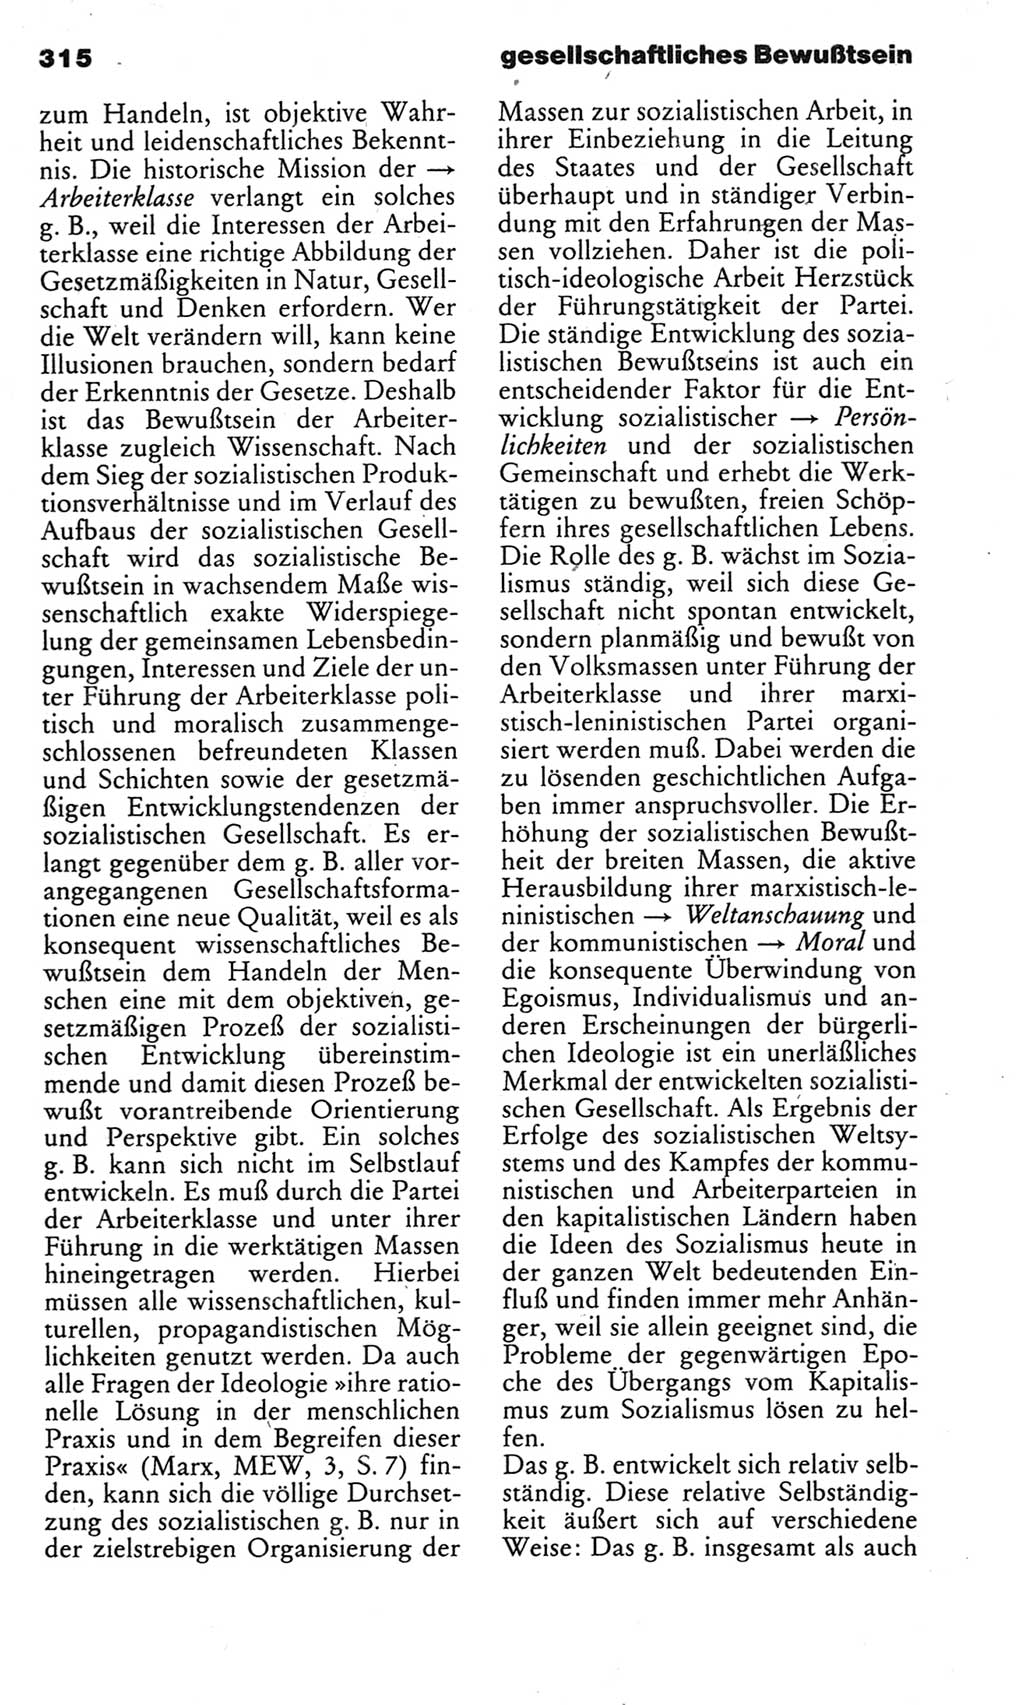 Kleines politisches Wörterbuch [Deutsche Demokratische Republik (DDR)] 1983, Seite 315 (Kl. pol. Wb. DDR 1983, S. 315)